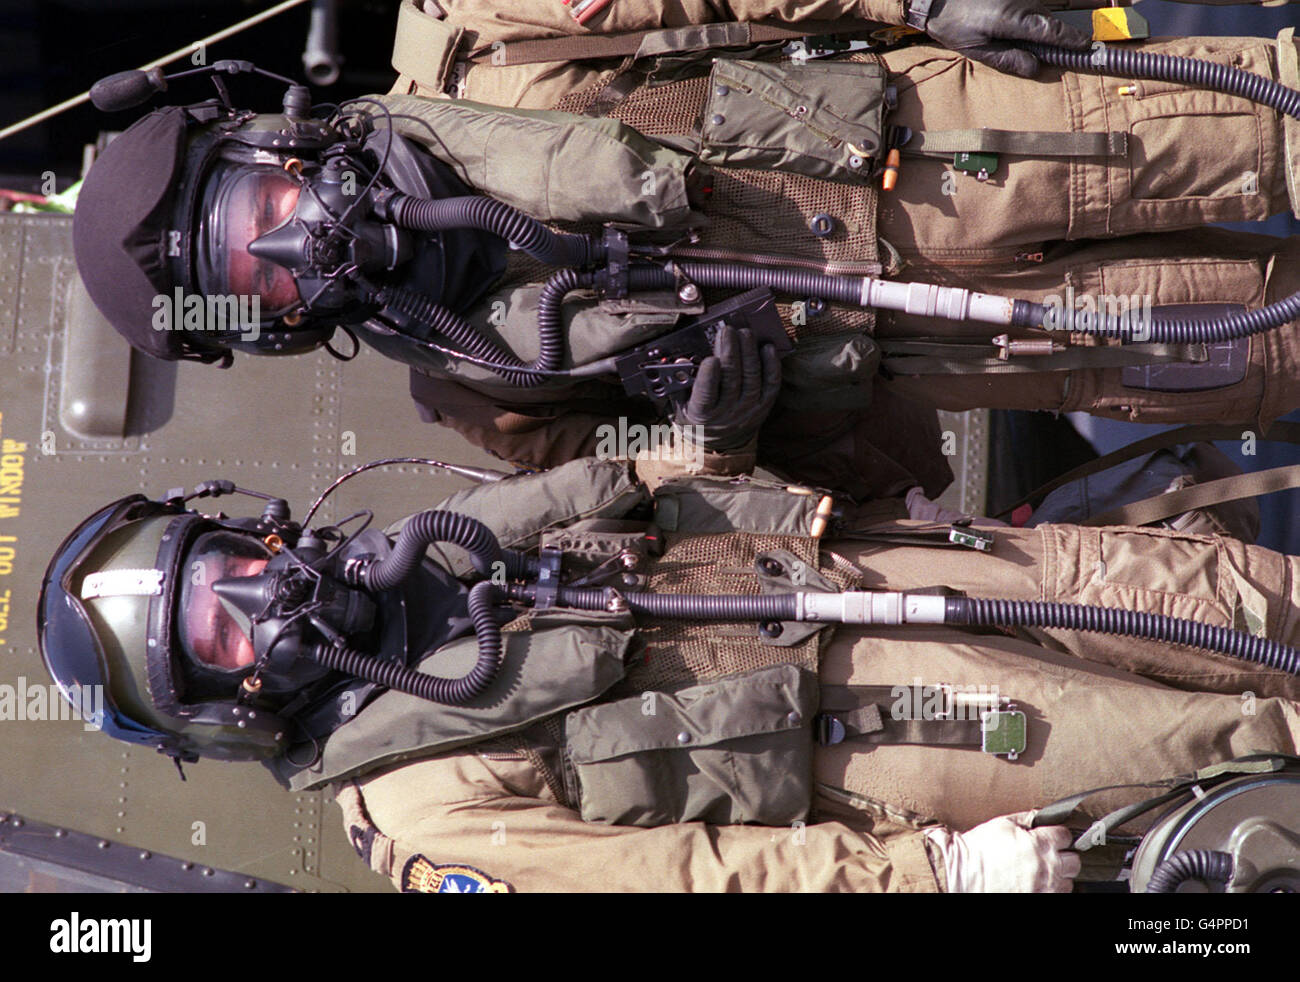 Die modernen Piloten neue chemische Kriegsführung Outfits, wie während des Golfkrieges getragen. Links: Sub. LT. Carl Conway, rechts: Sgt. Steve Humphreys, beide von Sommerset. Stockfoto